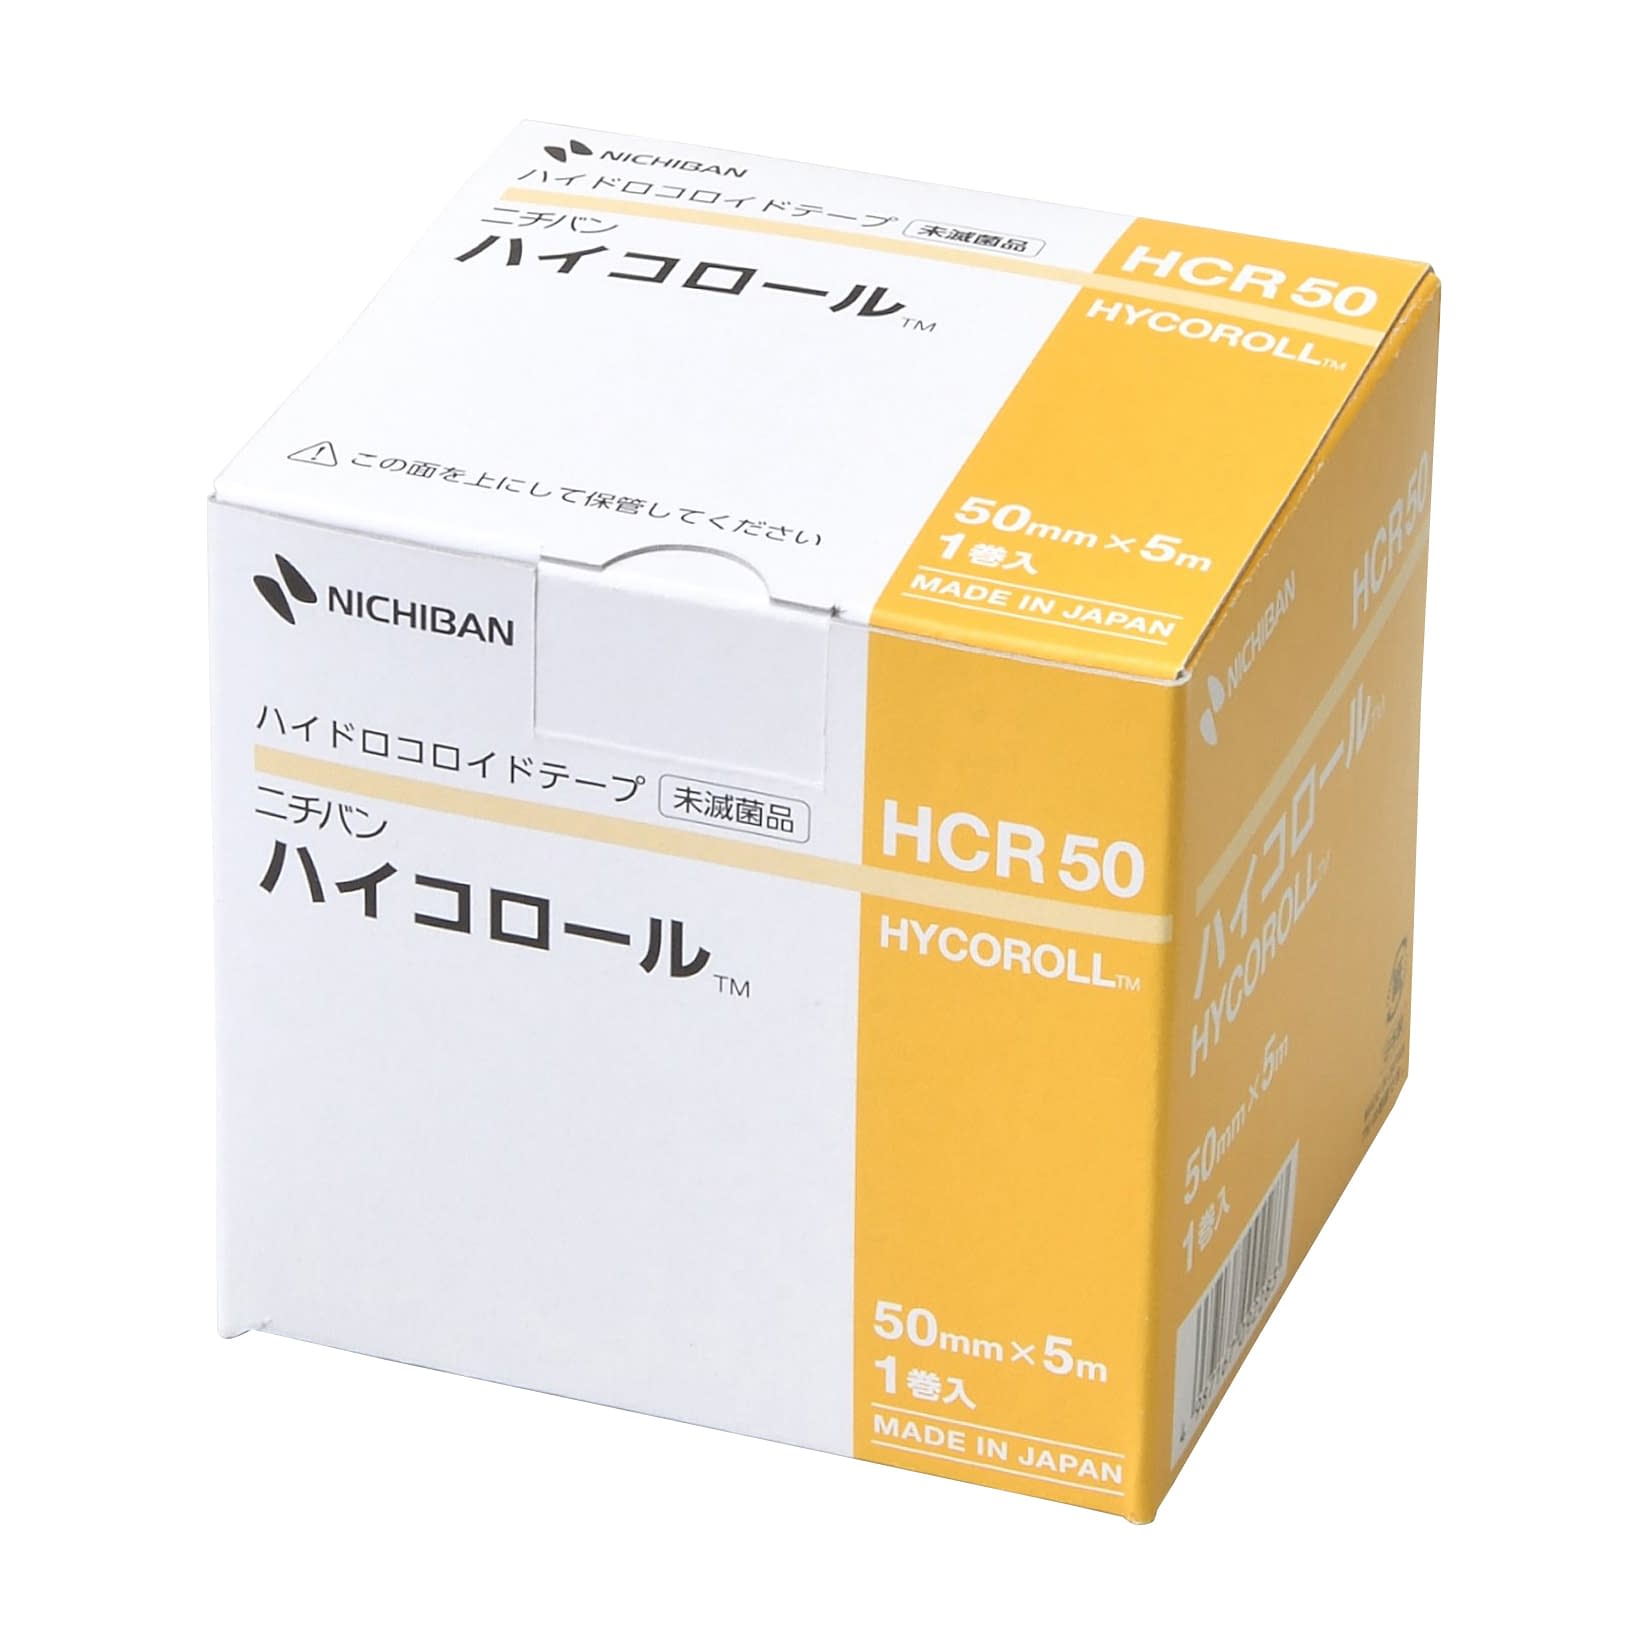 ハイドロコロイドテープ ハイコロールHCR50(50MMX5M)HCR50(50MMX5M)(24-8585-01)【ニチバン】(販売単位:1)